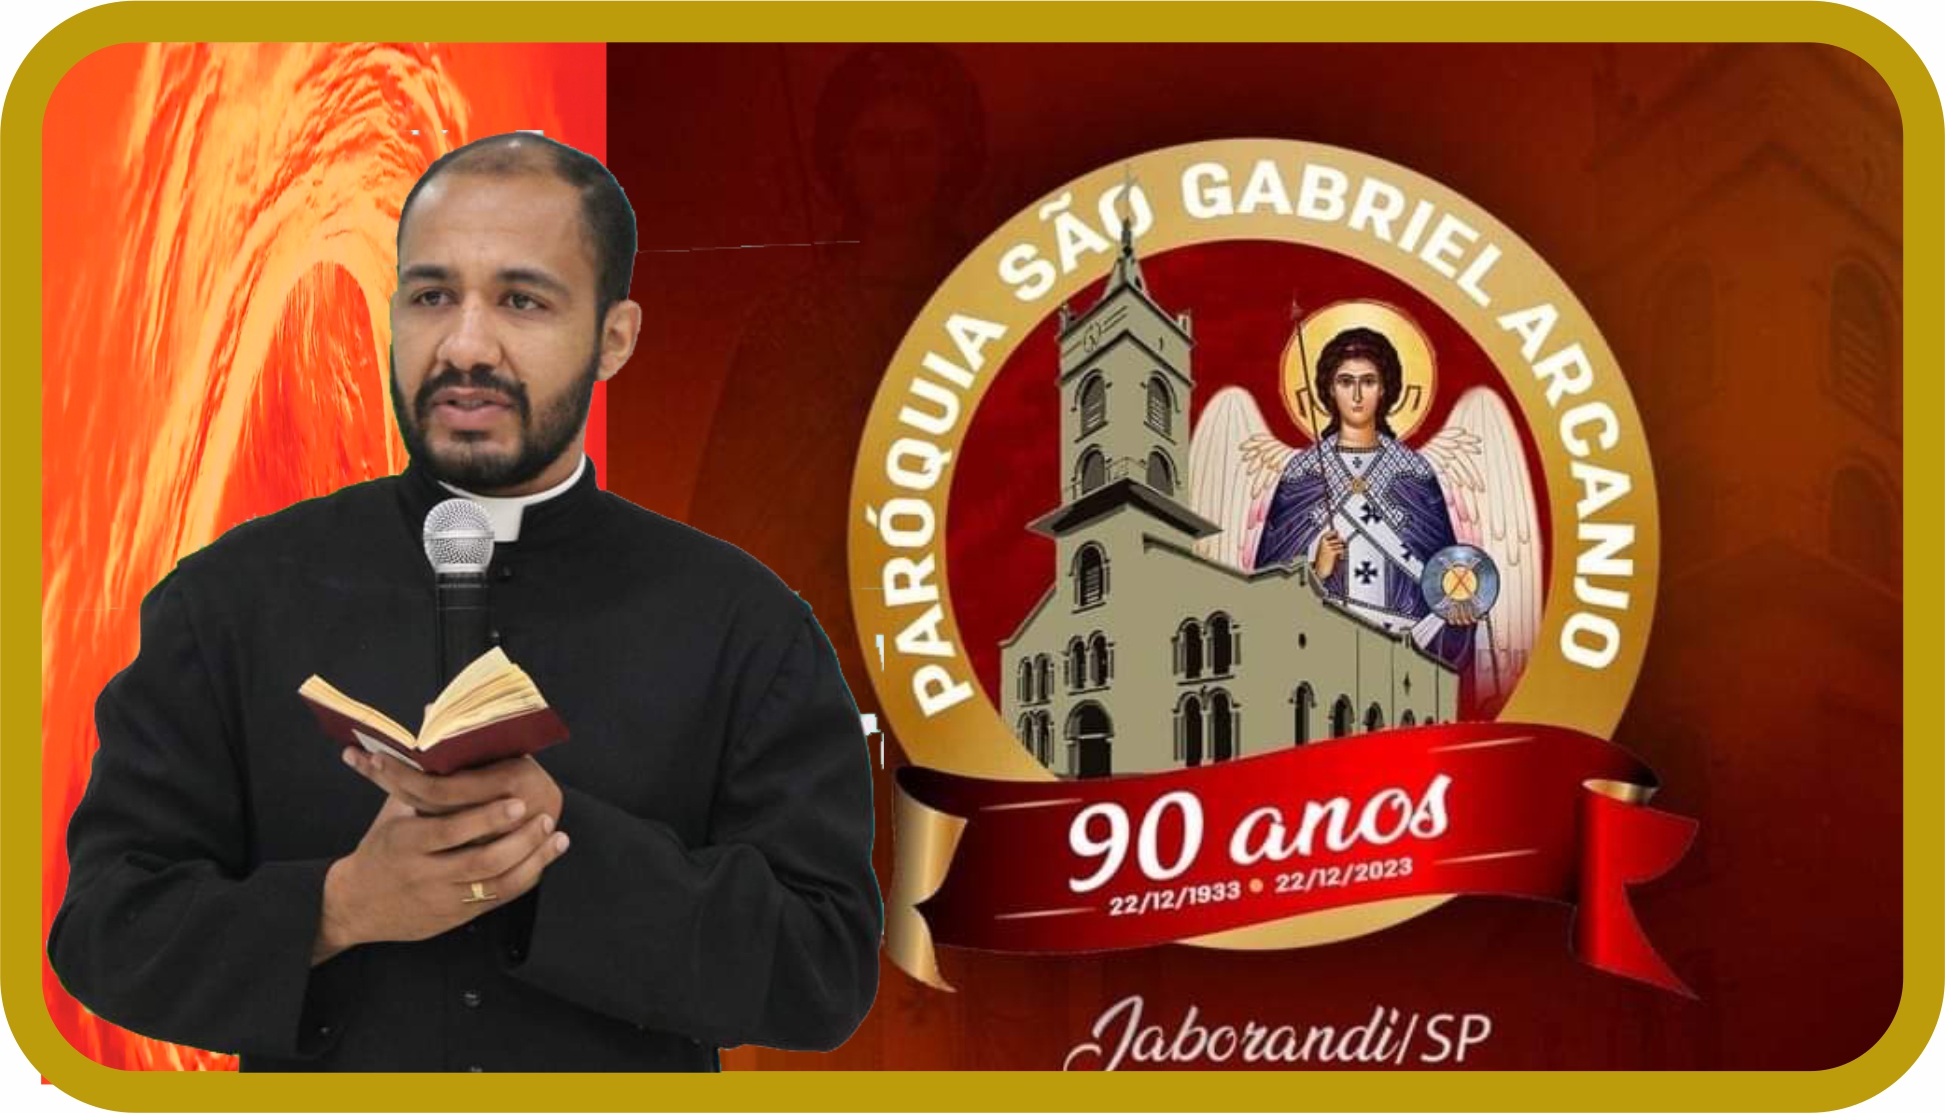 Foto | Paróquia São Gabriel Arcanjo de Jaborandi celebra Jubileu de 90 anos